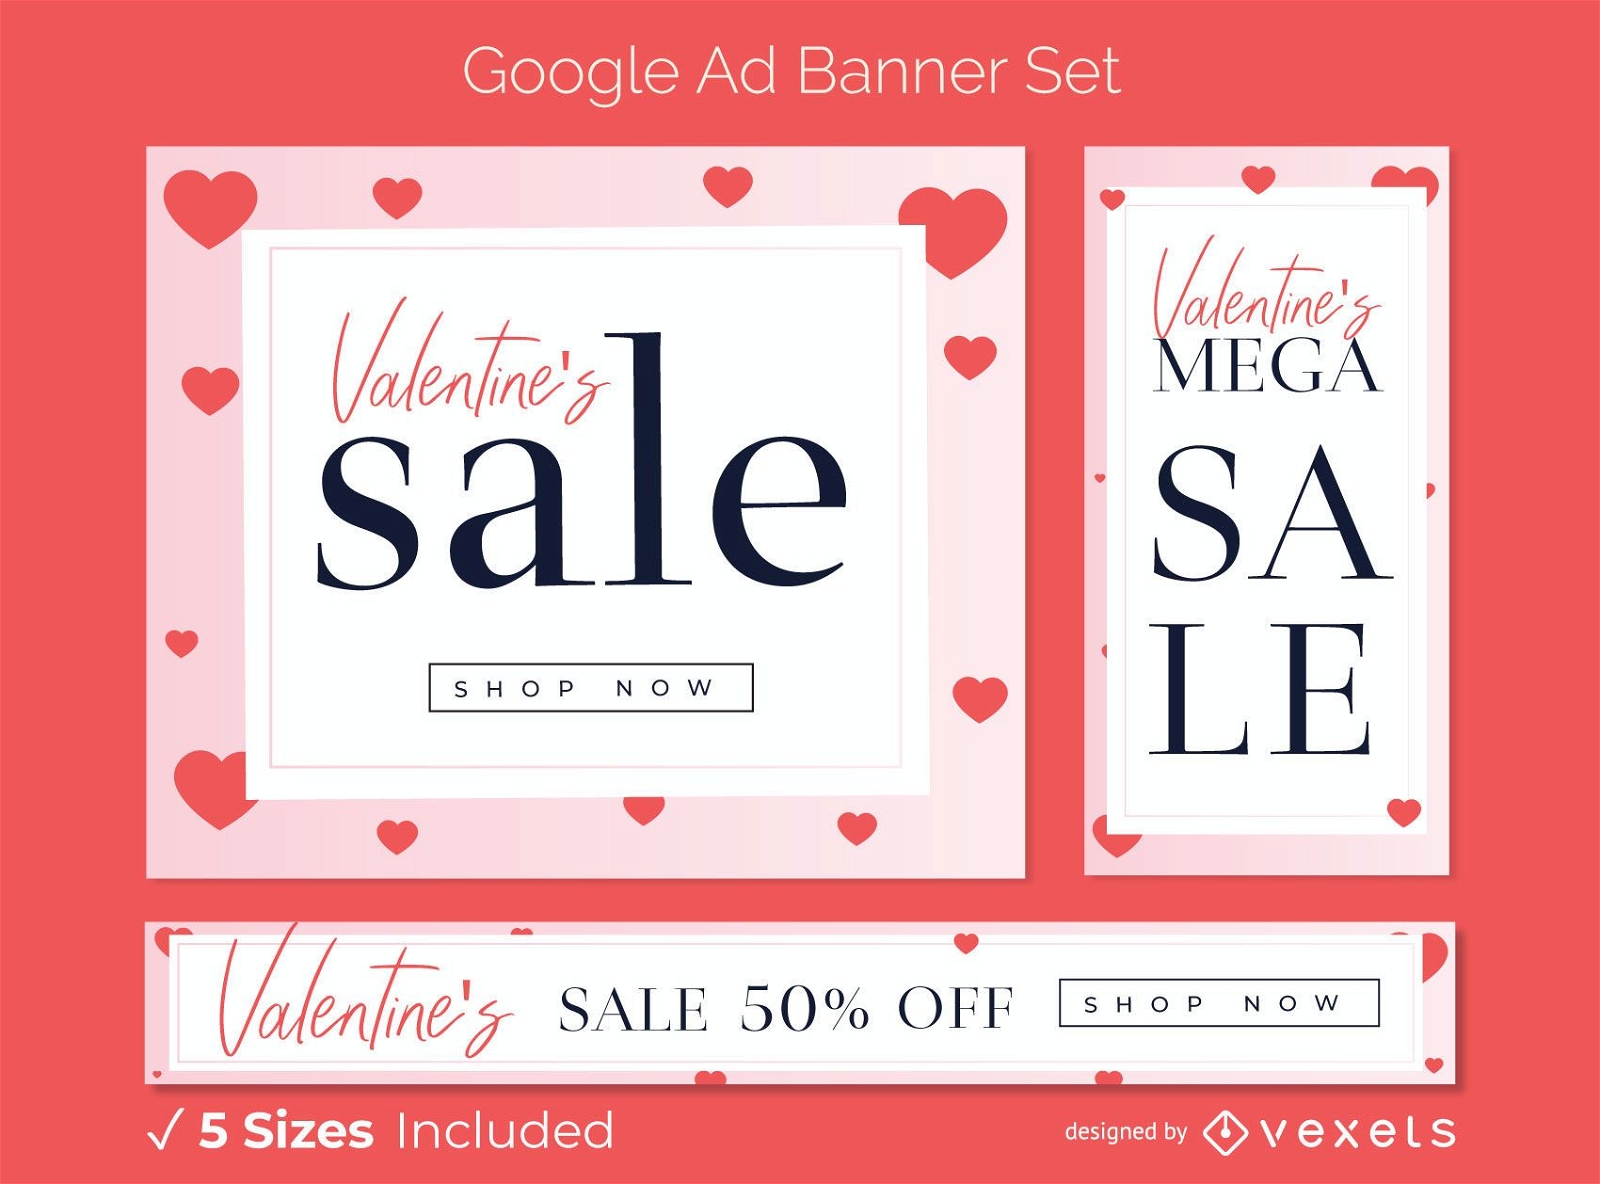 Valentine's sale ad banner set